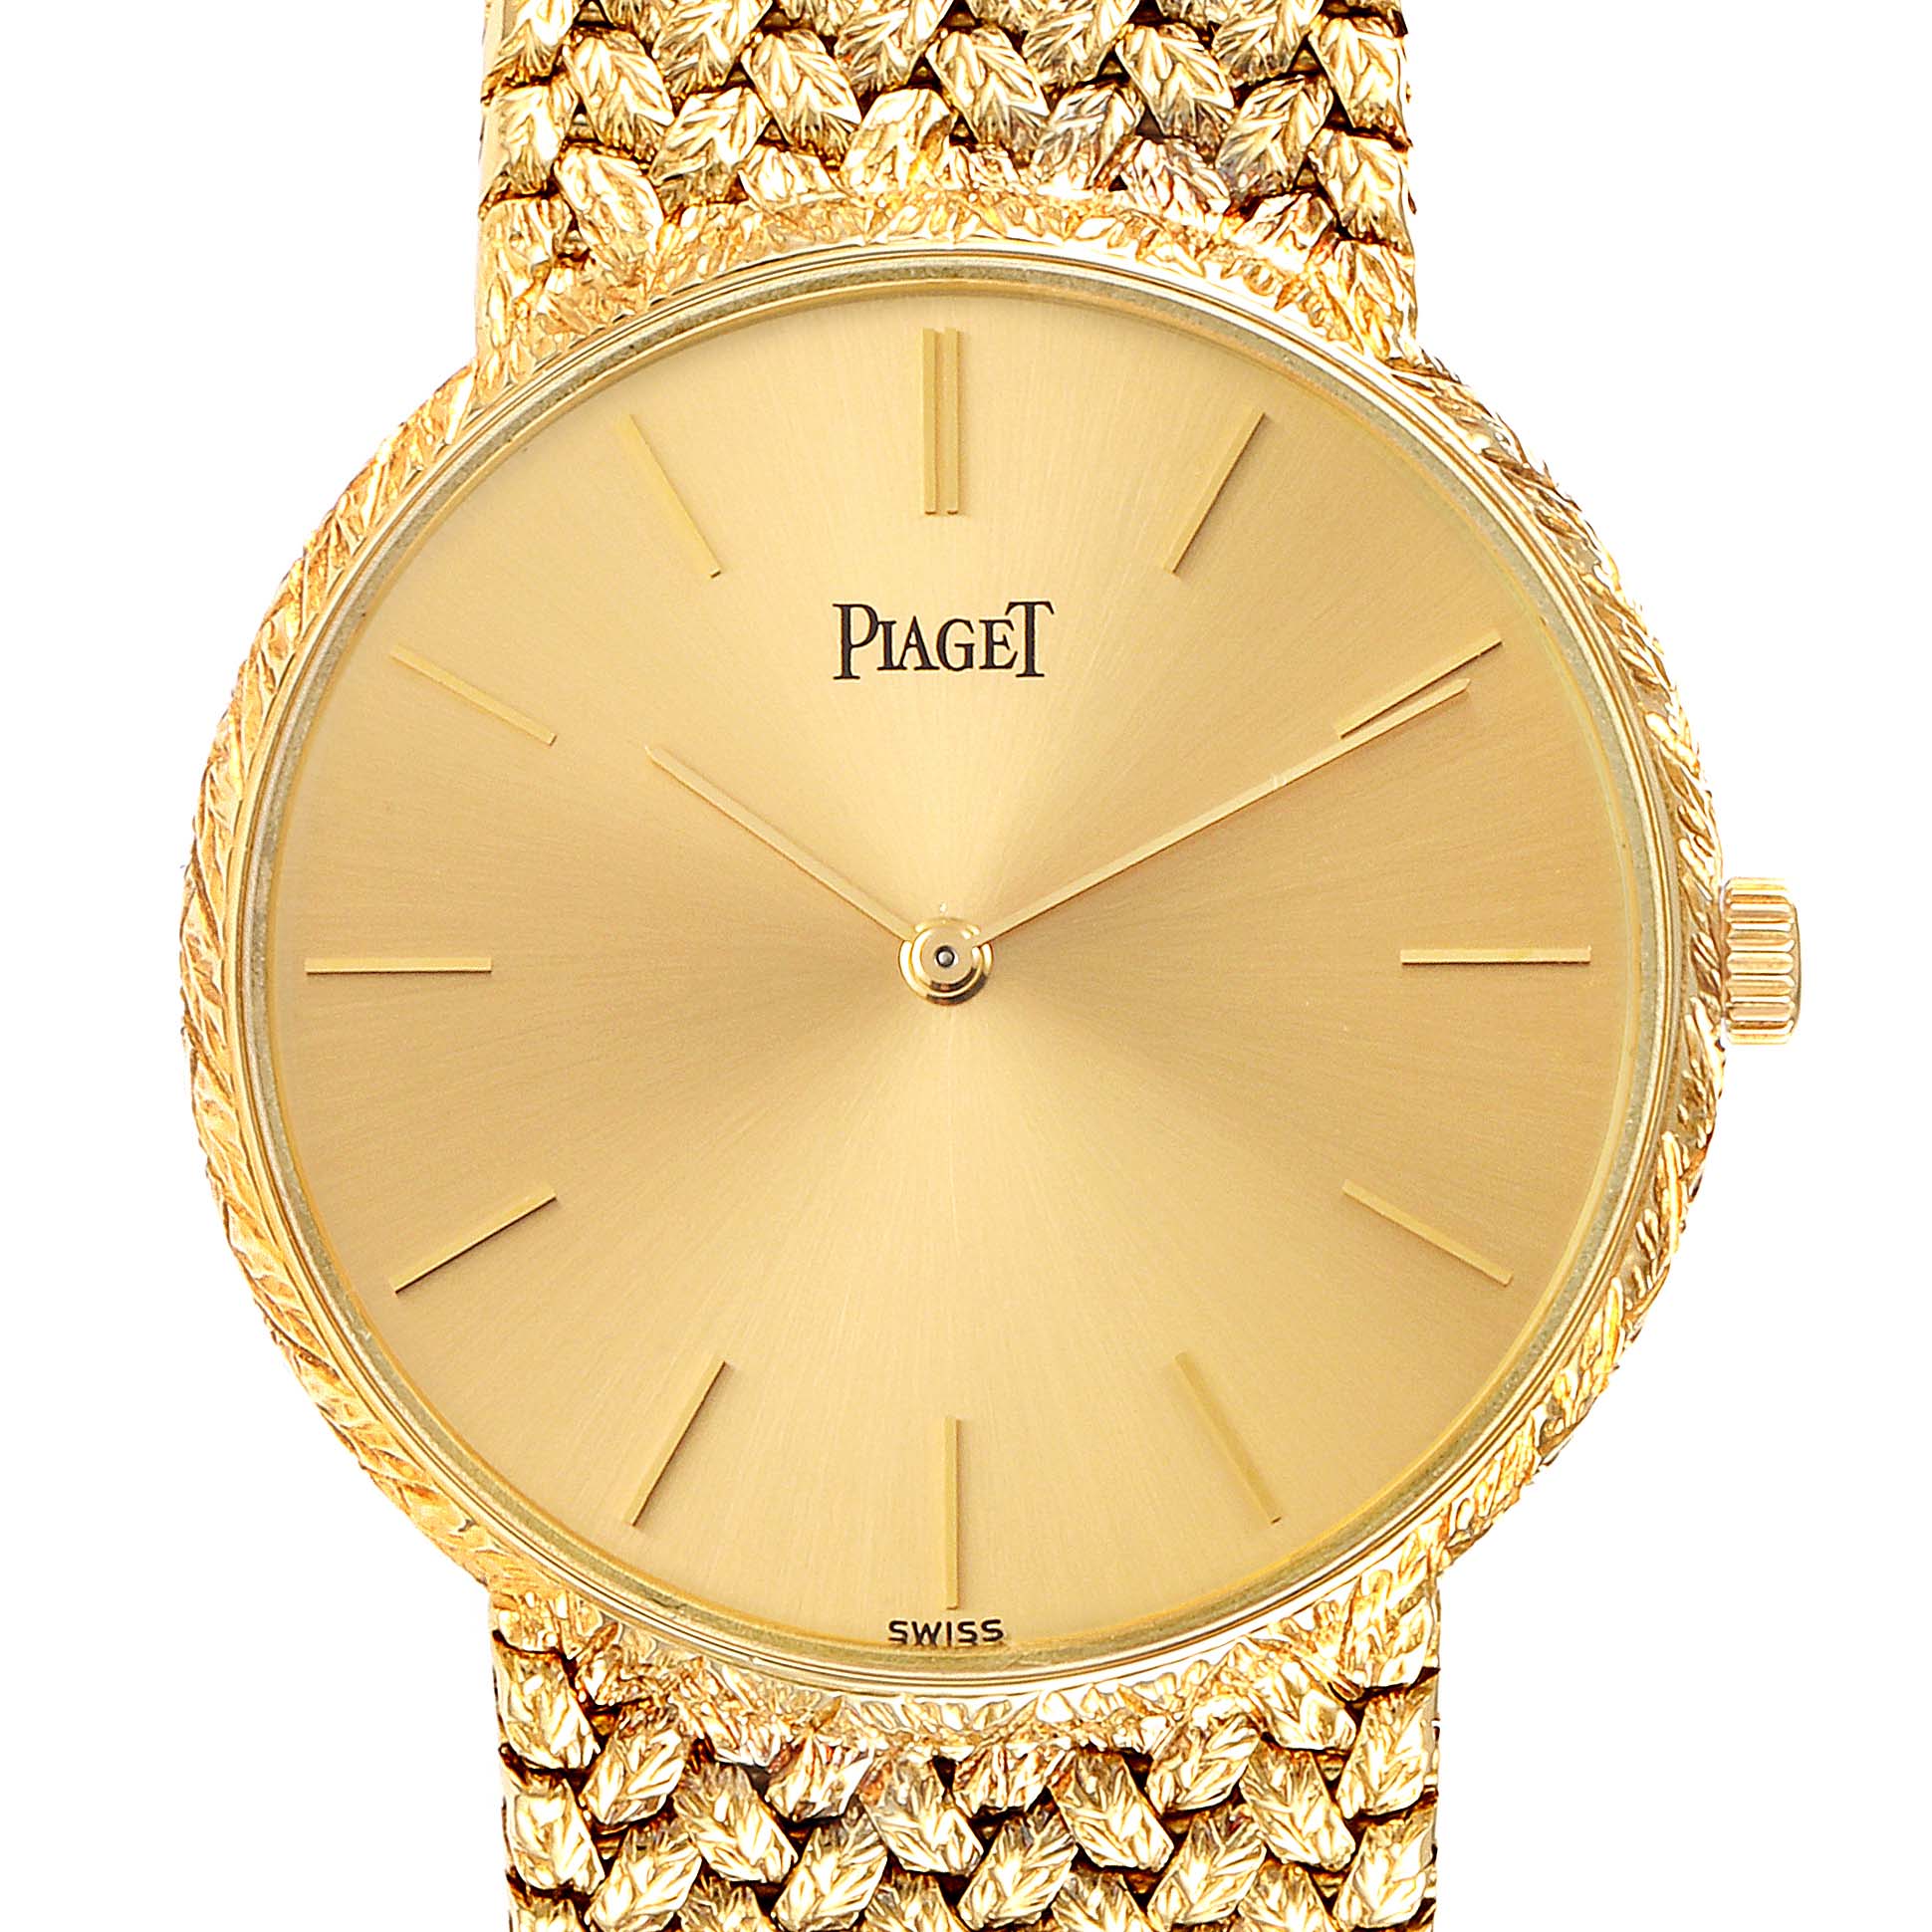 Piaget 18k Gold Watch | lupon.gov.ph